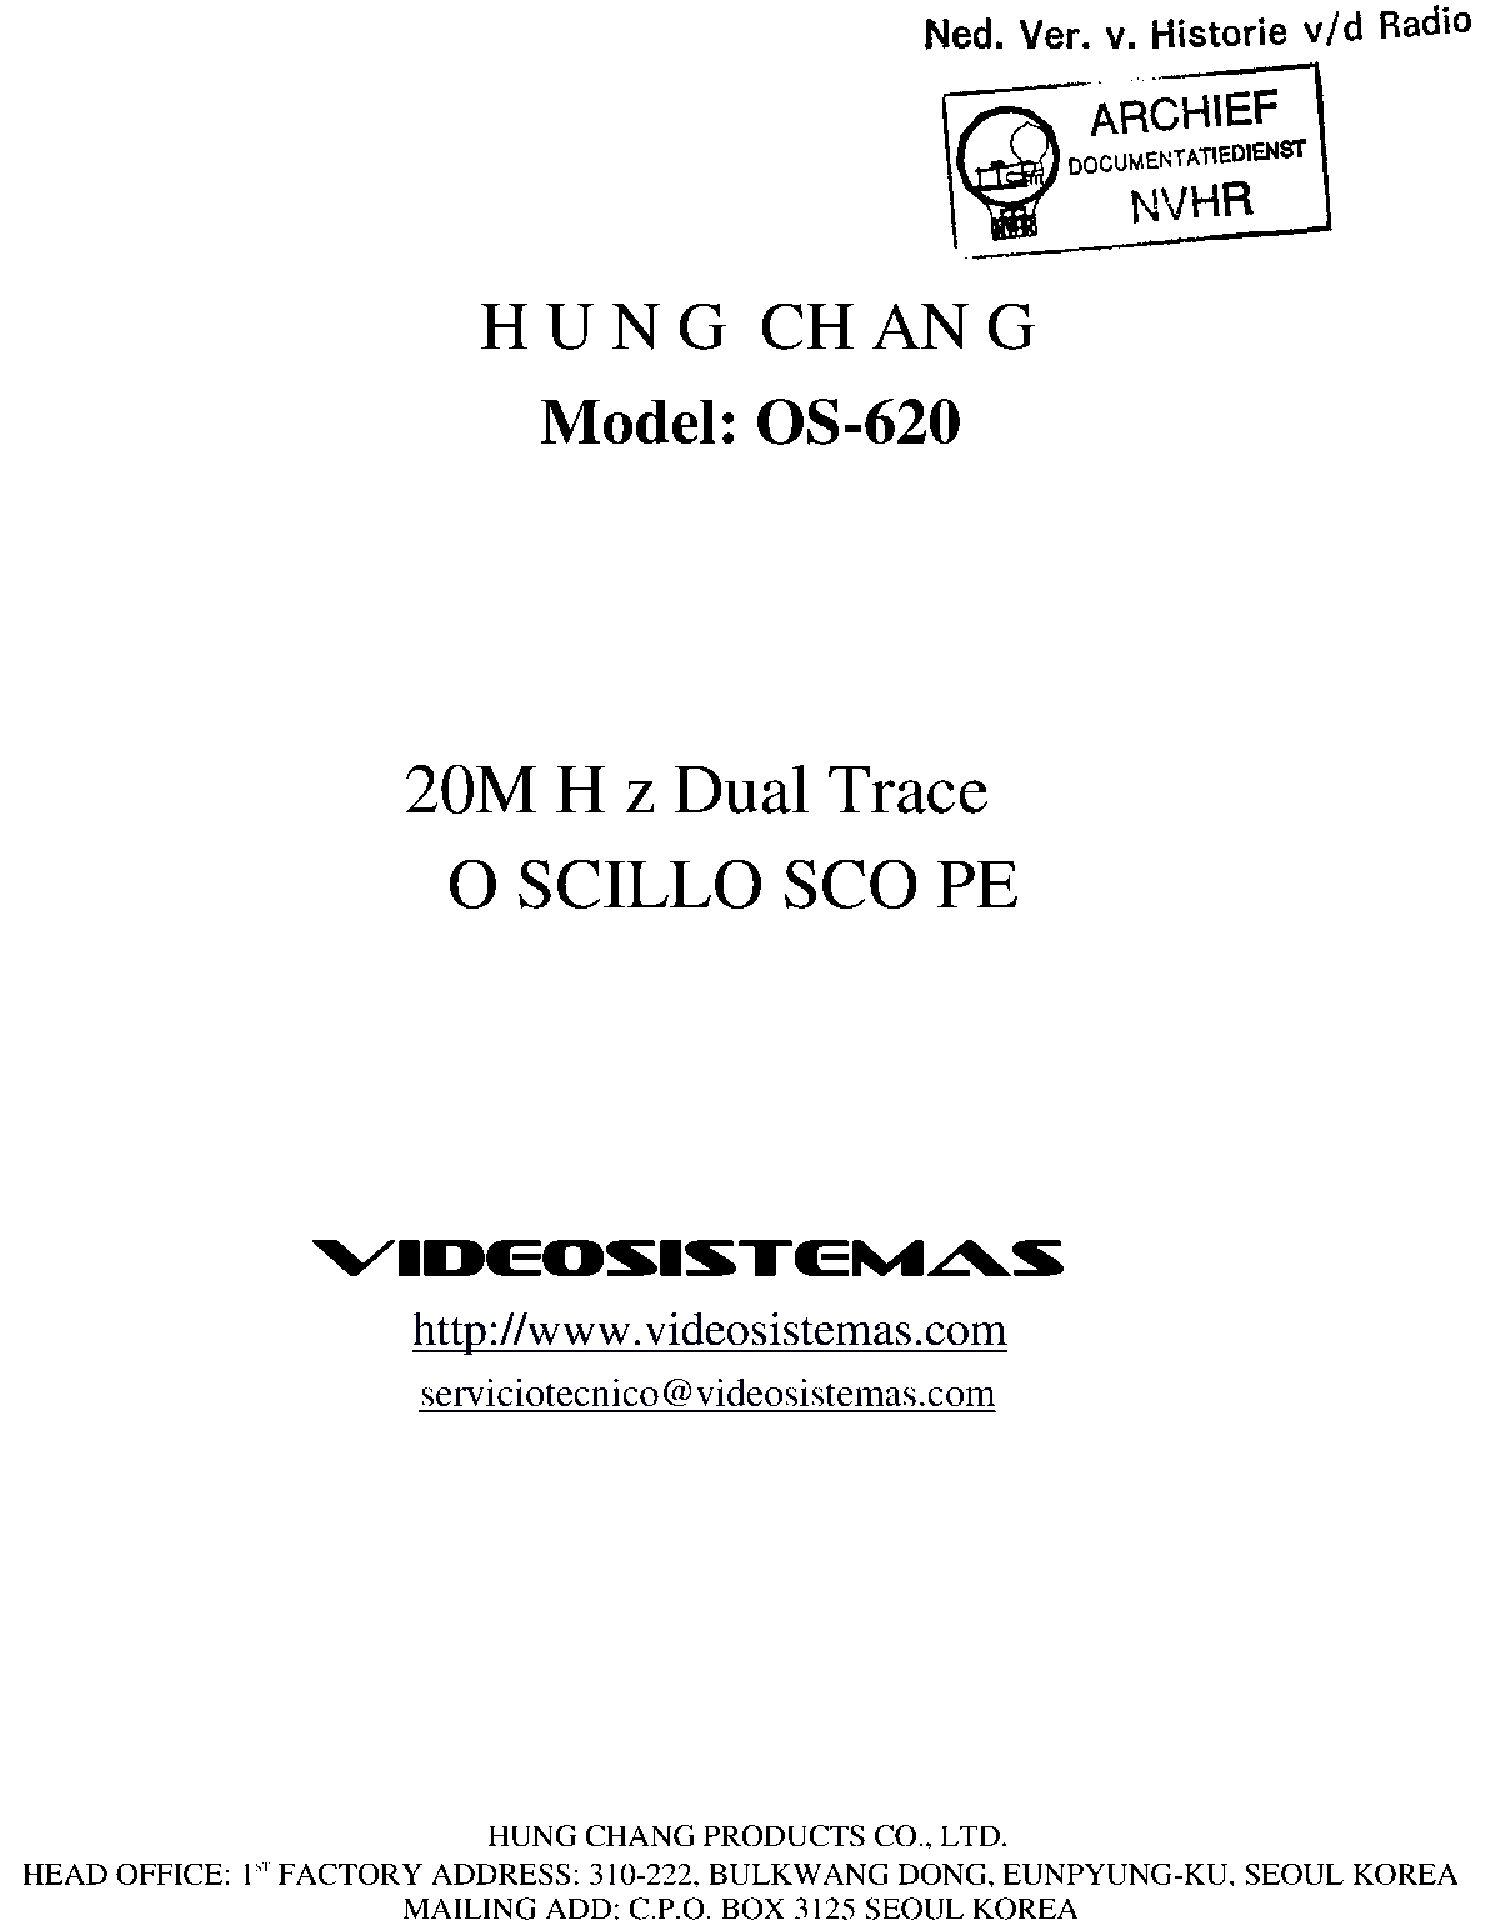 Download Free Software Hung Chang Oscilloscope Manual